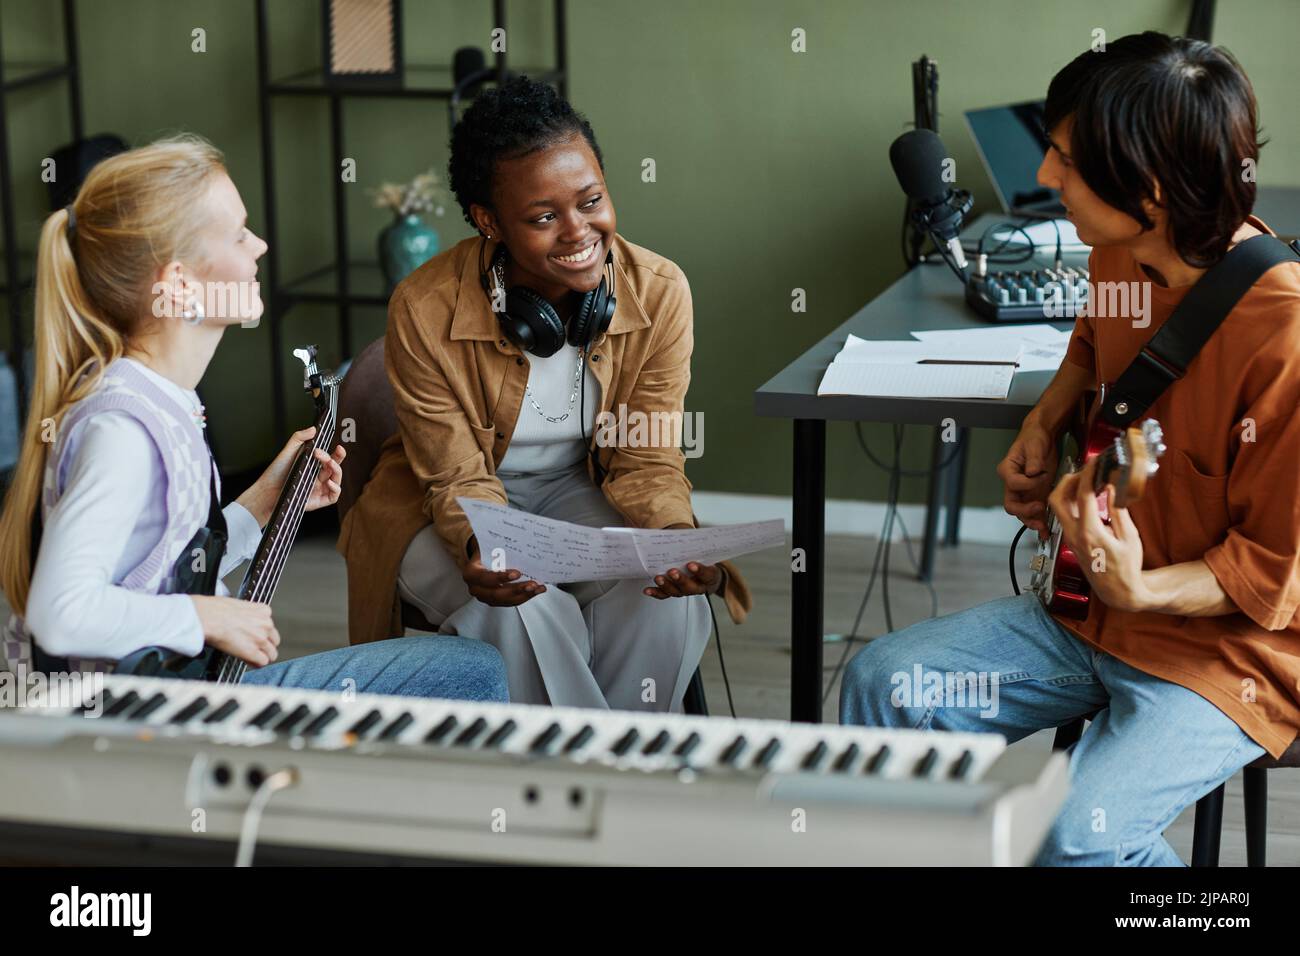 Retrato de tres jóvenes músicos escribiendo canciones juntos, se centran en una mujer negra sonriendo felizmente y sosteniendo una hoja de música Foto de stock